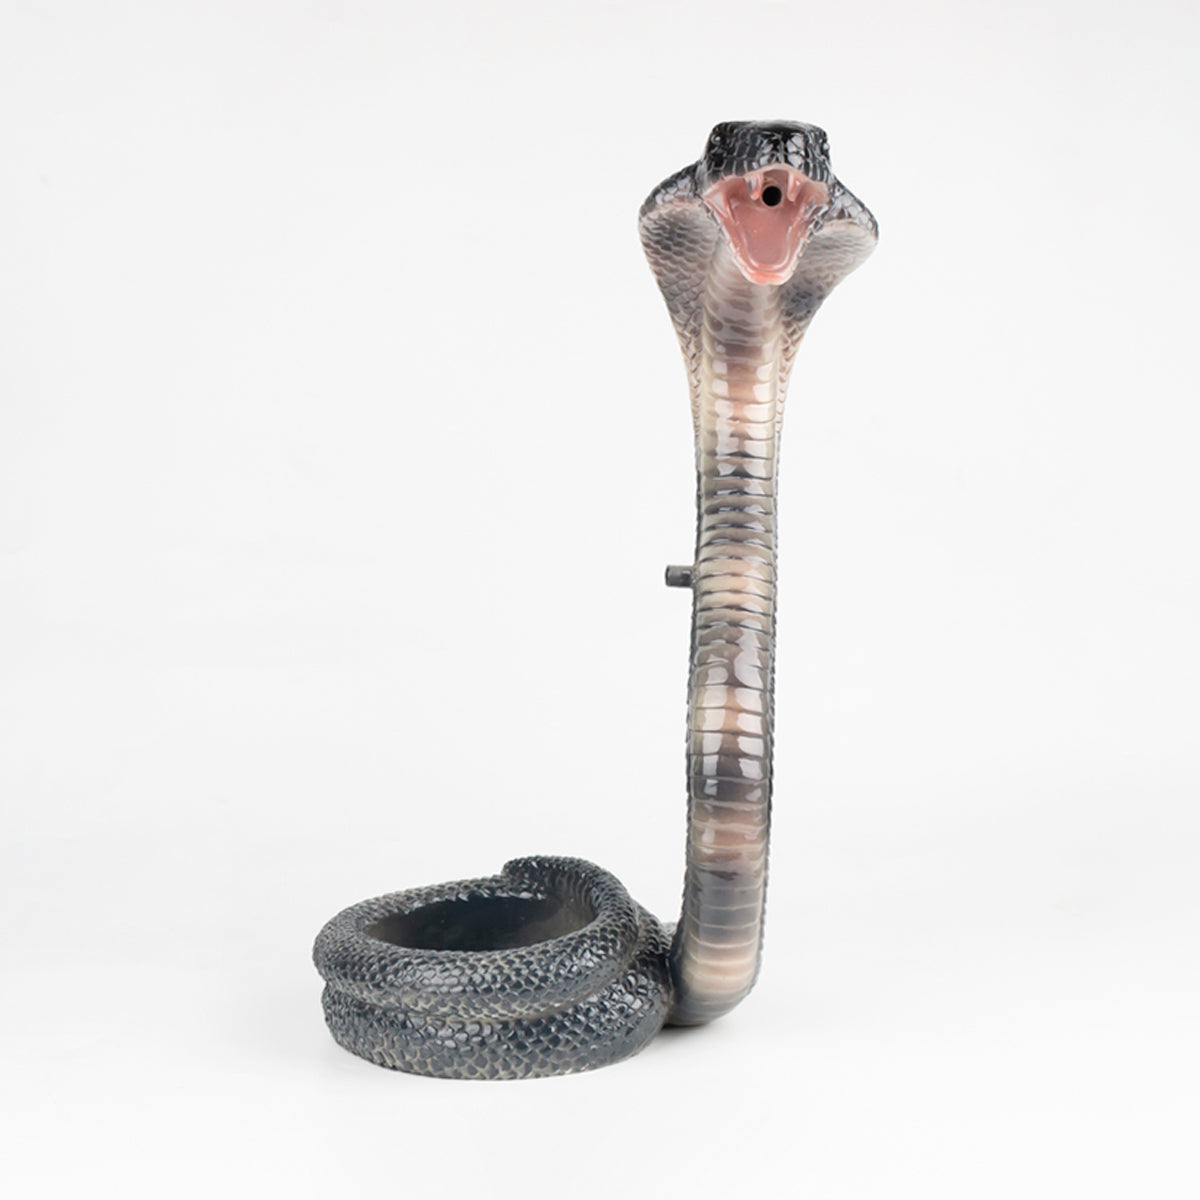 New hookah snake sheesha pipes skull-shape glass hookah